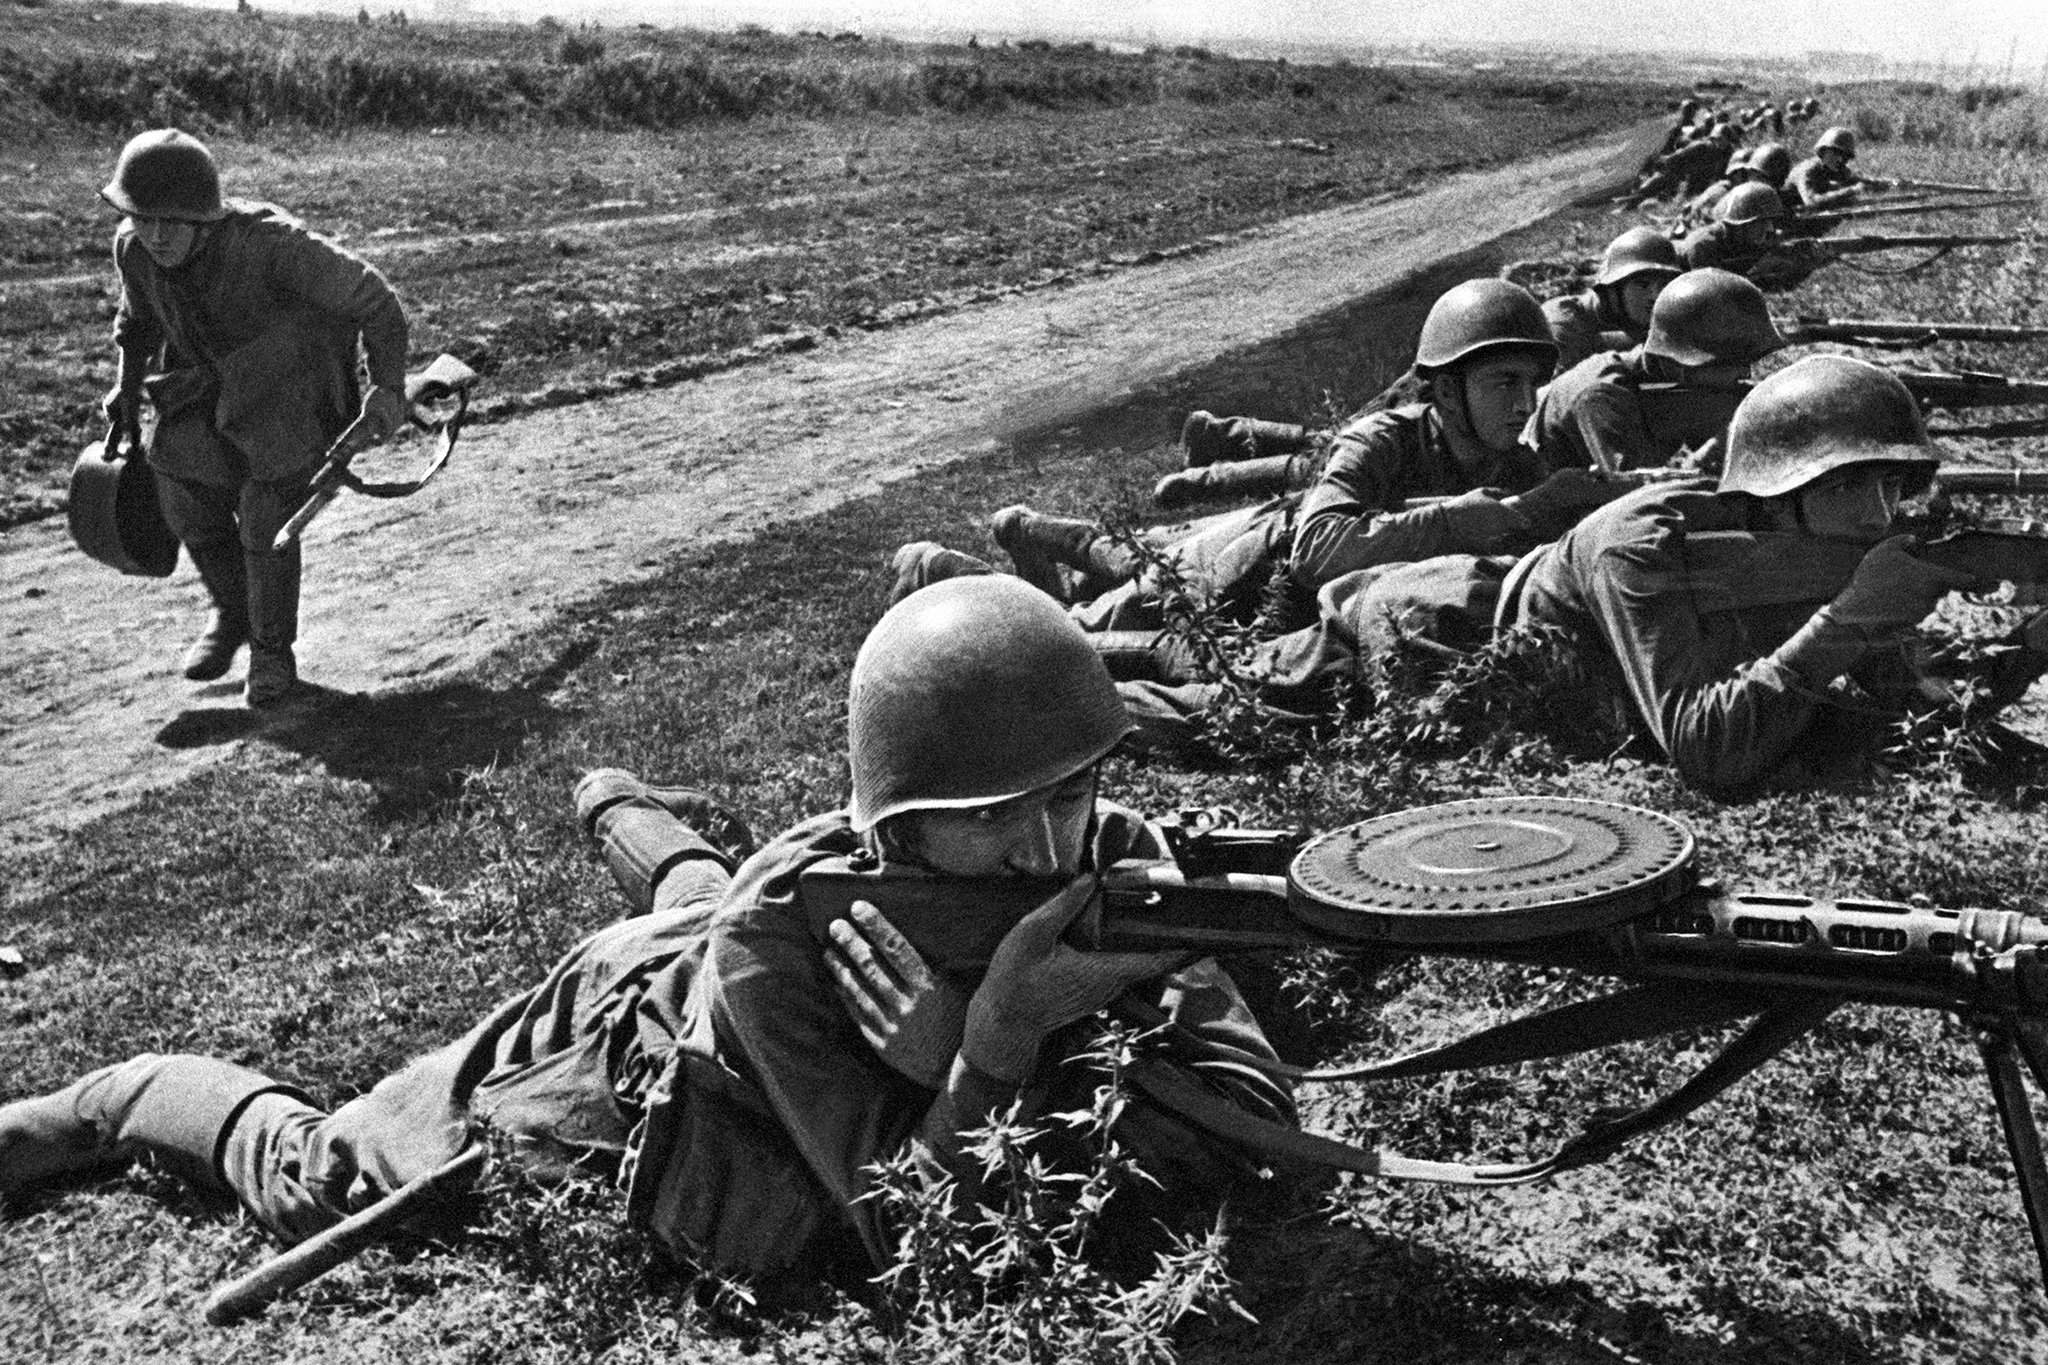 Картинка про великую войну. ДП 27 на Великой Отечественной войне. Великий отчество войны 1941-1945.